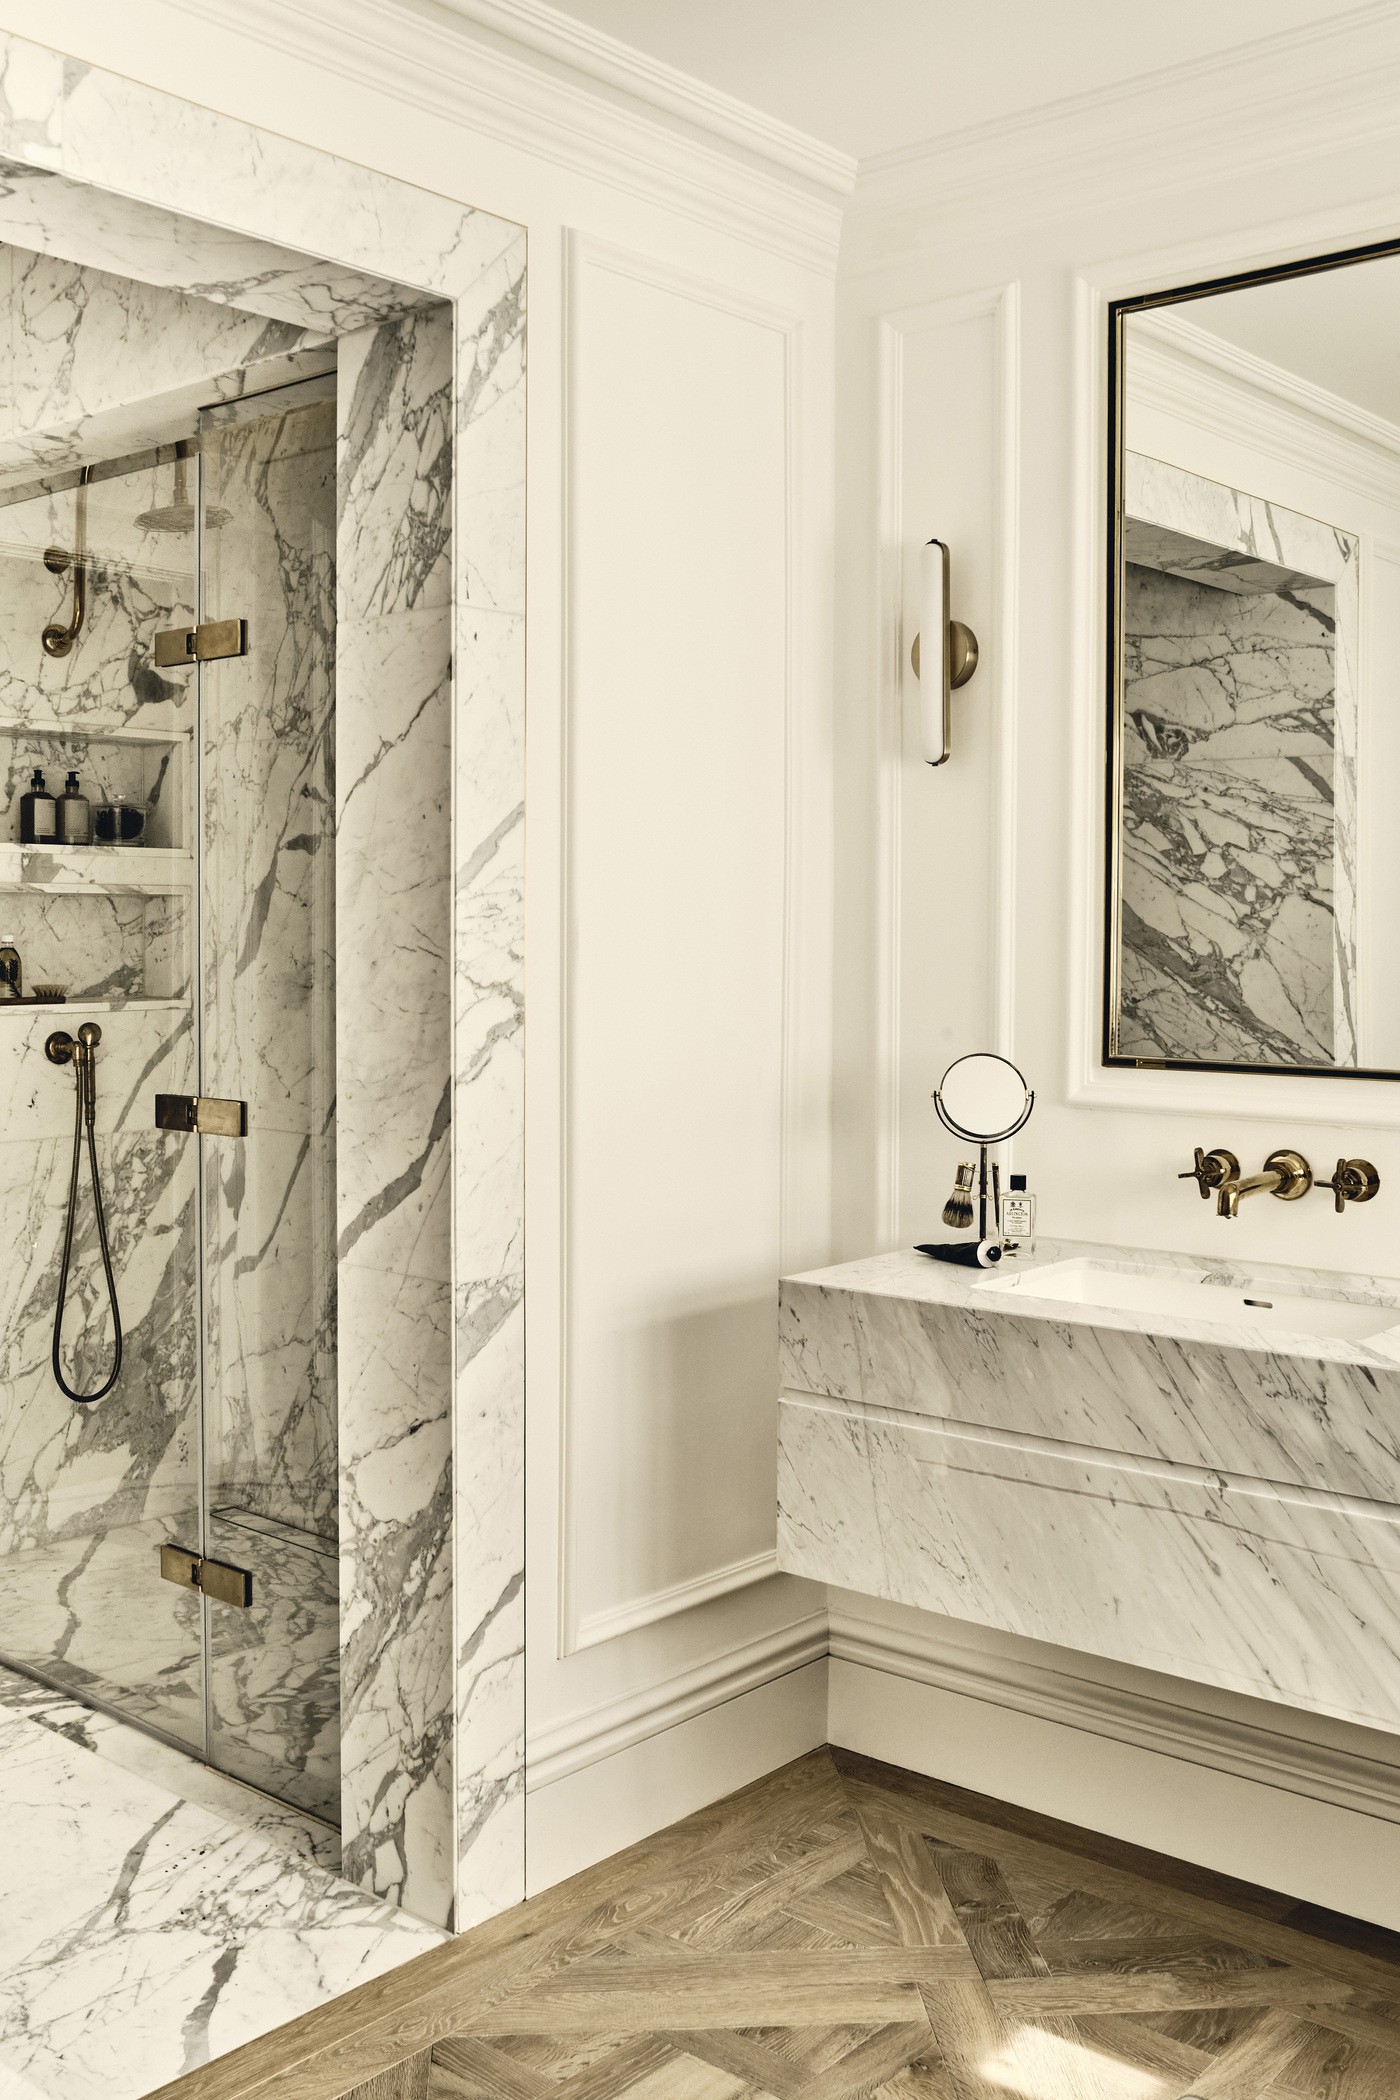 Décor do dia: banheiro com banheira mescla mármore e madeira  (Foto: Banda/Ben Anders)